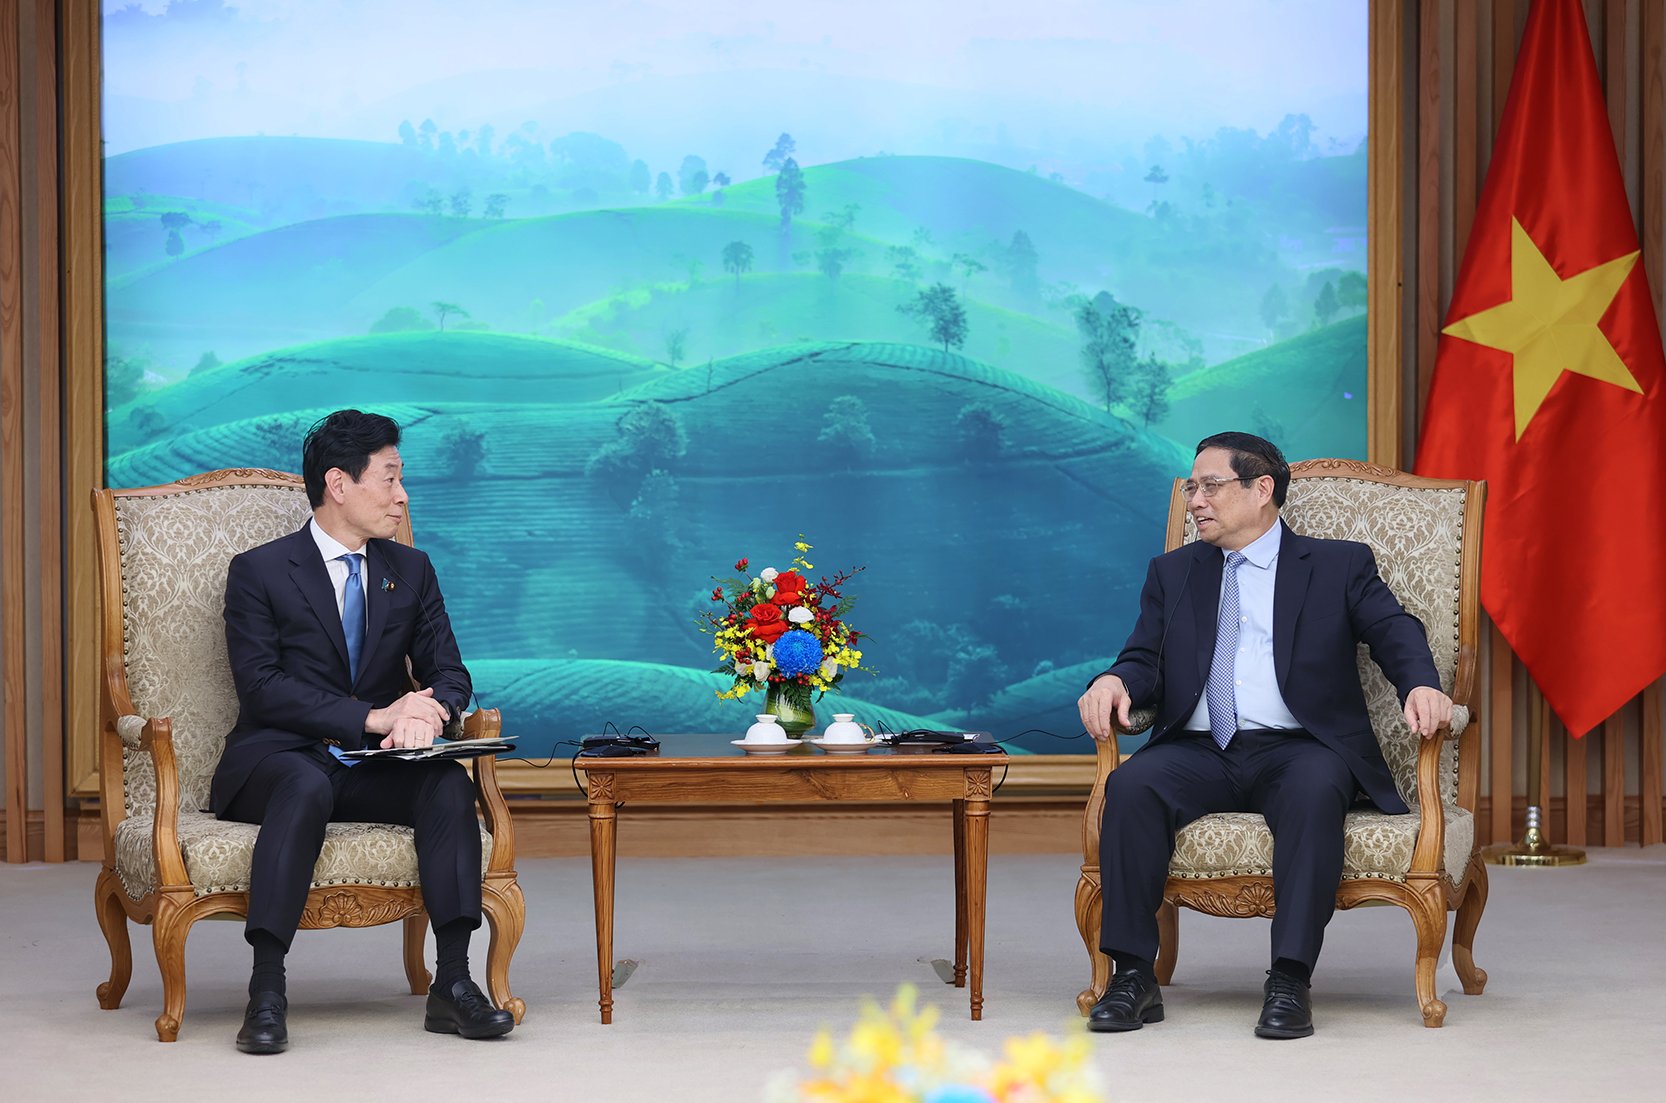 Thủ tướng Phạm Minh Chính đề nghị Chính phủ Nhật Bản hỗ trợ Việt Nam trong khảo sát, xây dựng, cung cấp ODA thế hệ mới cho các dự án phát triển cơ sở hạ tầng chiến lược quy mô lớn của Việt Nam - Ảnh: VGP/Nhật Bắc